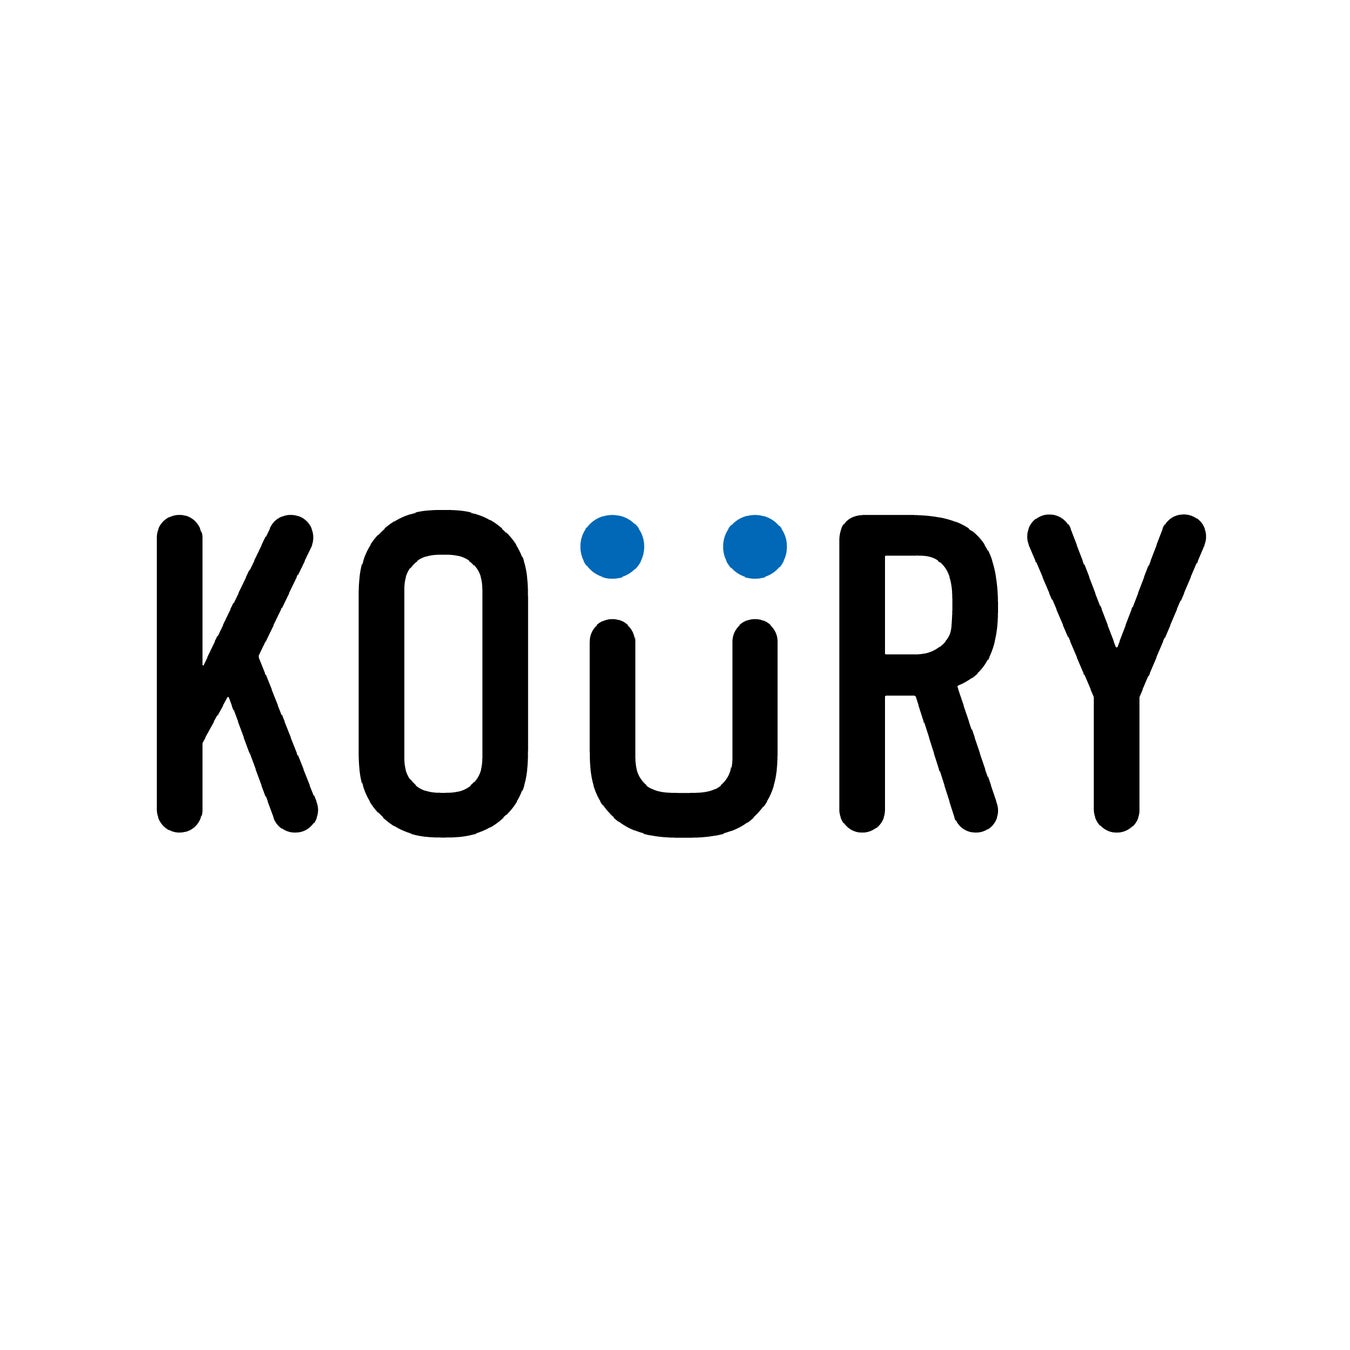 定期通販・D2Cに特化したデータ経営支援ツール「KOURY(コウリー)」をサービス開始のサブ画像1